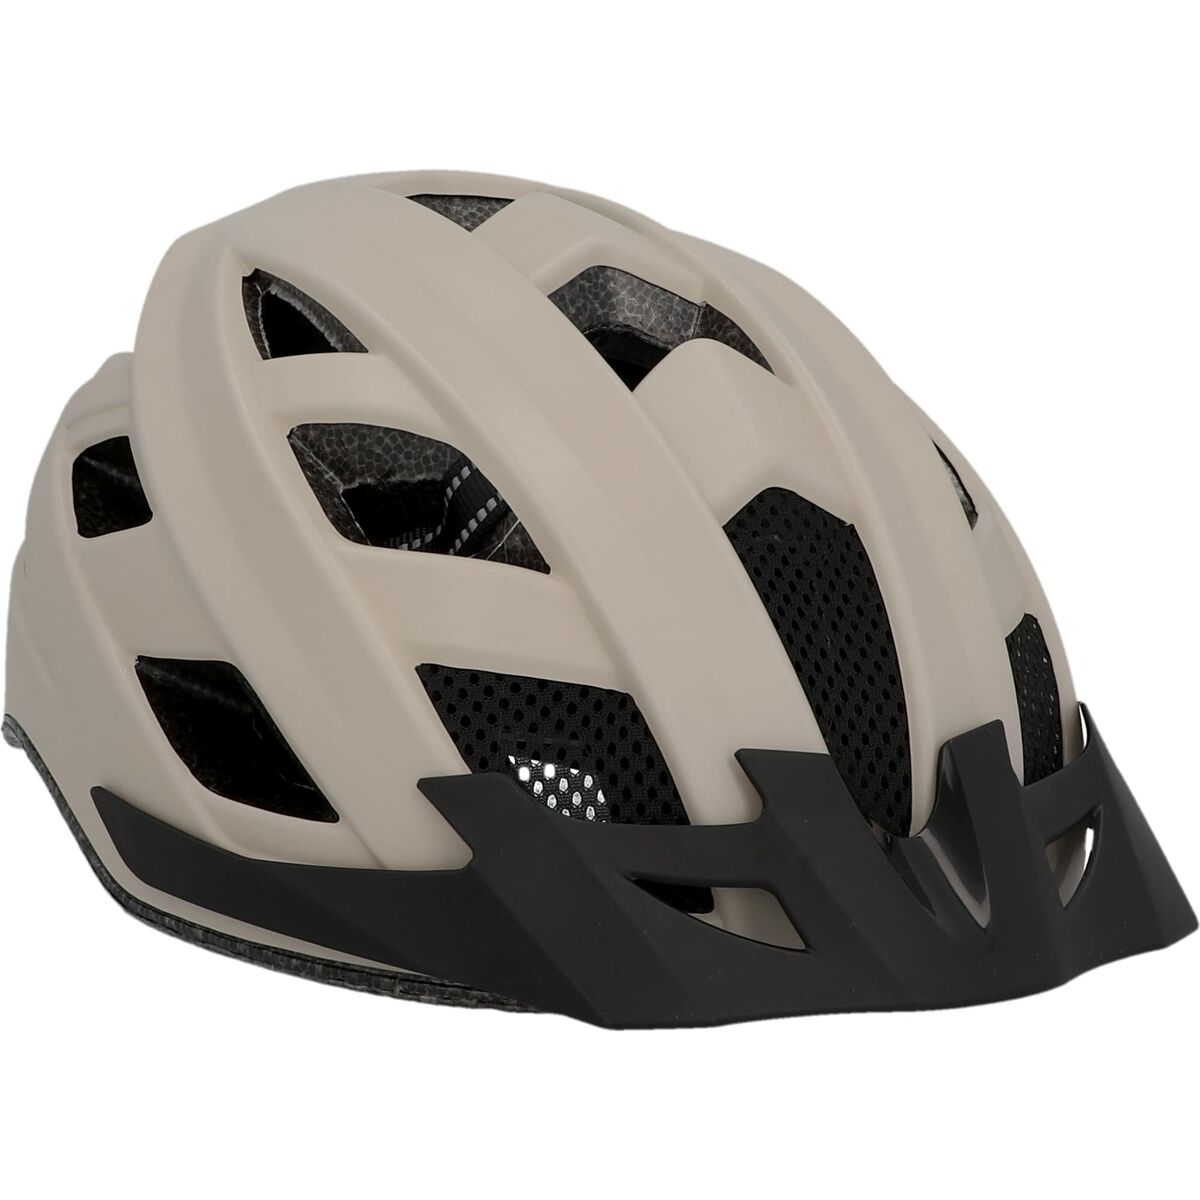 Adult's Cycling Helmet Fischer 50629 (Refurbished B)